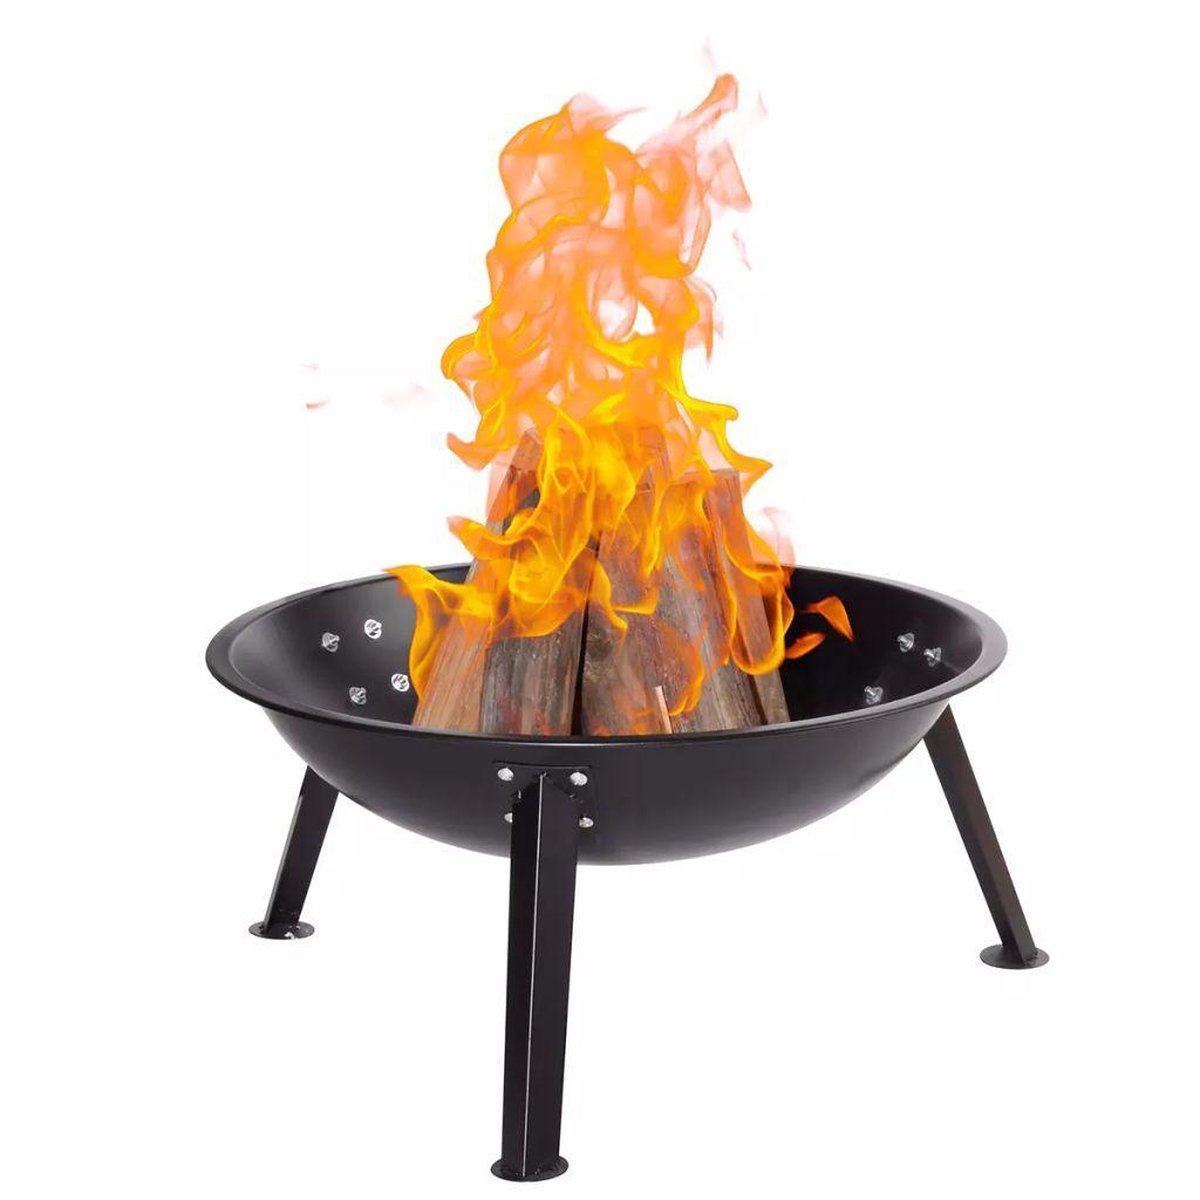 Voor type spiegel voelen Vuurschaal Qlima buitenbarbecue & grill Barbecue Vuurschaal 4556 –  Outlet-winkel.com